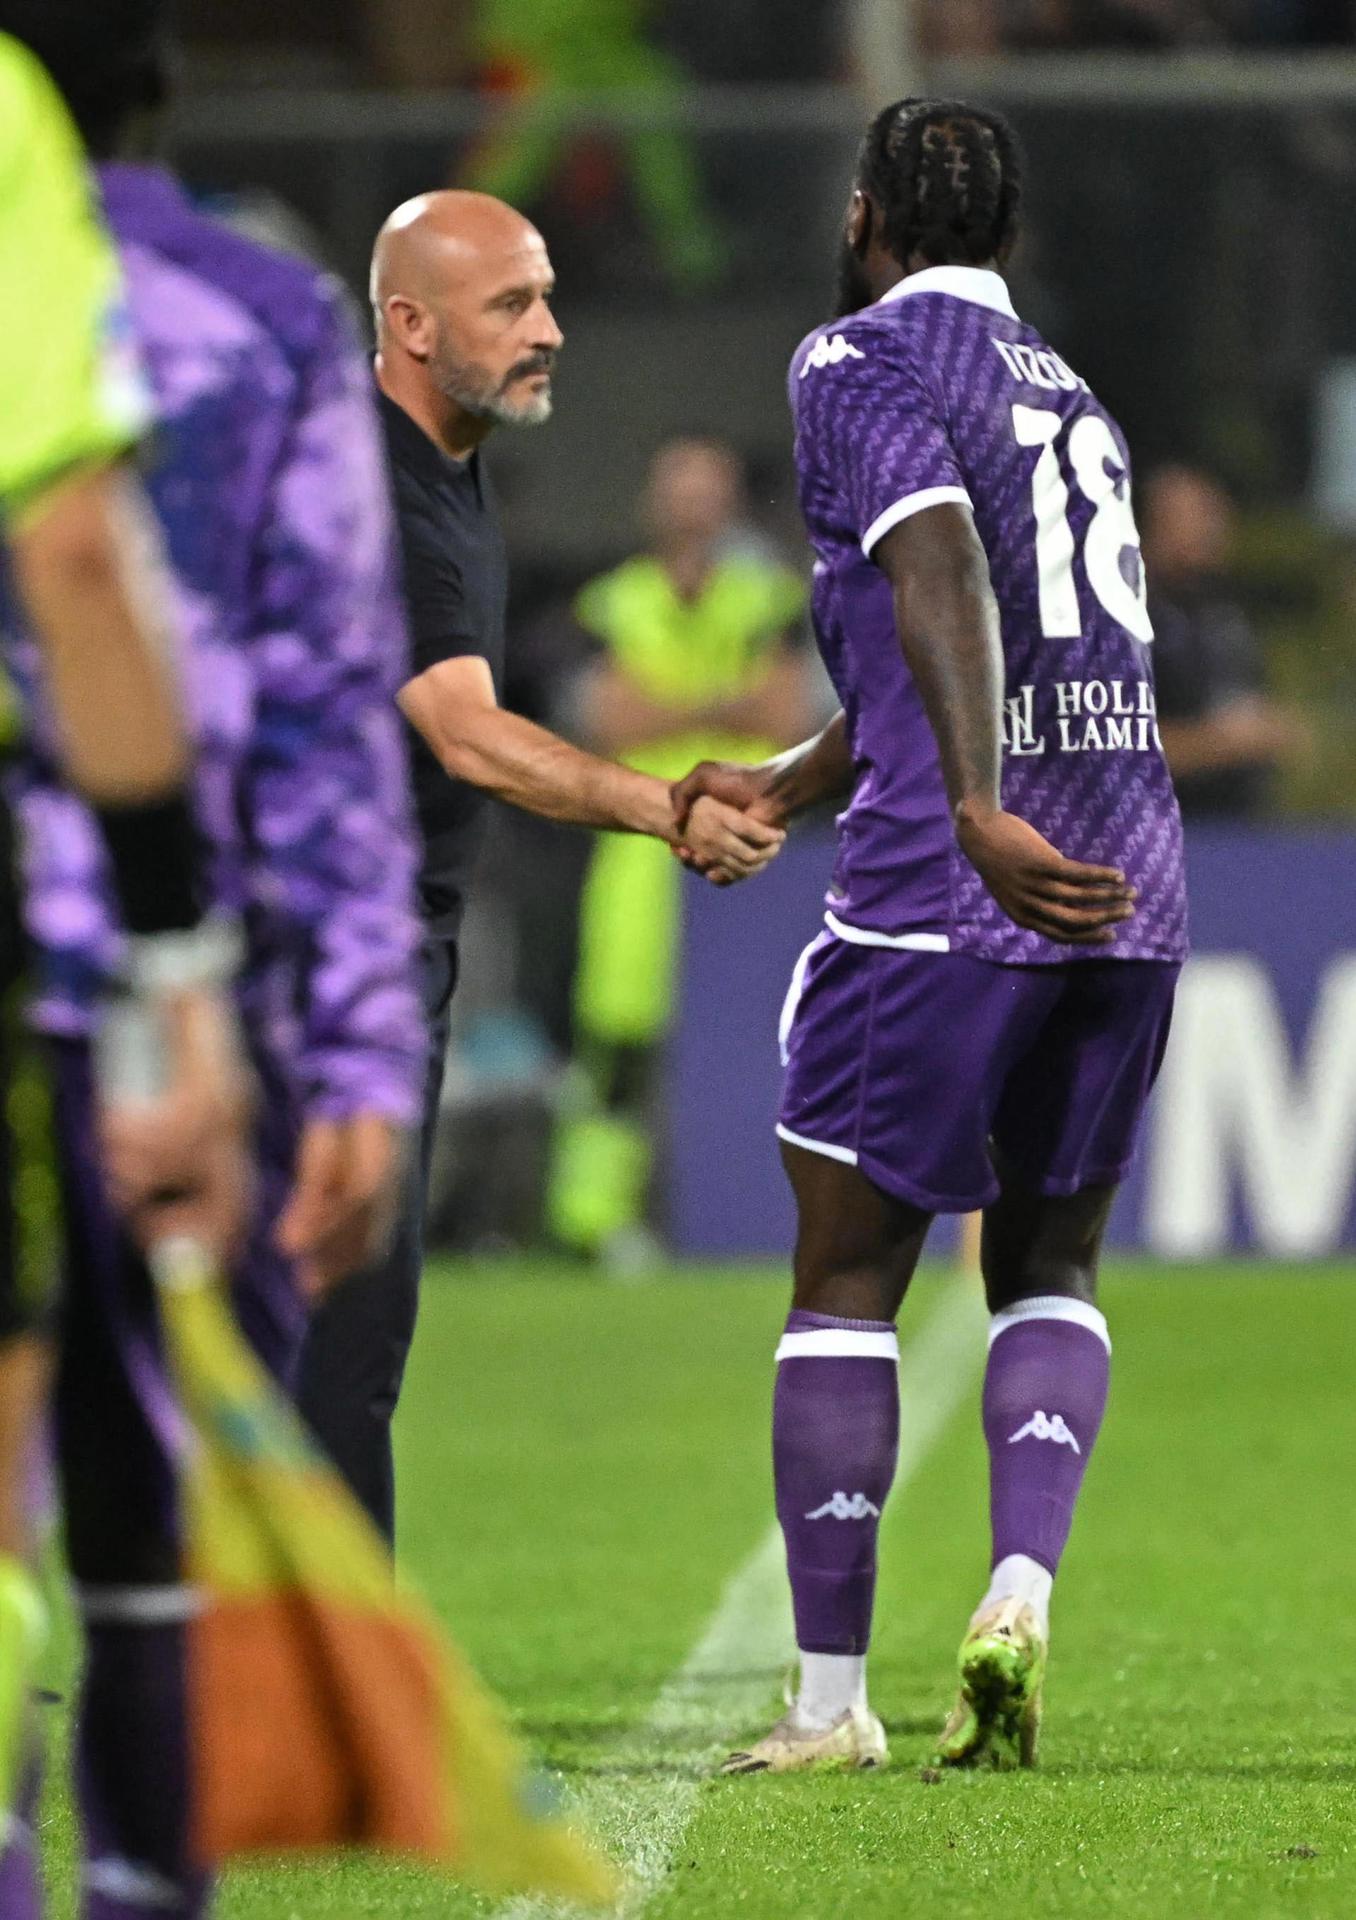 El jugador del Fiorentina M'Bala Nzola (L) celebra el 3-0 contra el Caglilari. EFE/EPA/CLAUDIO GIOVANNINI